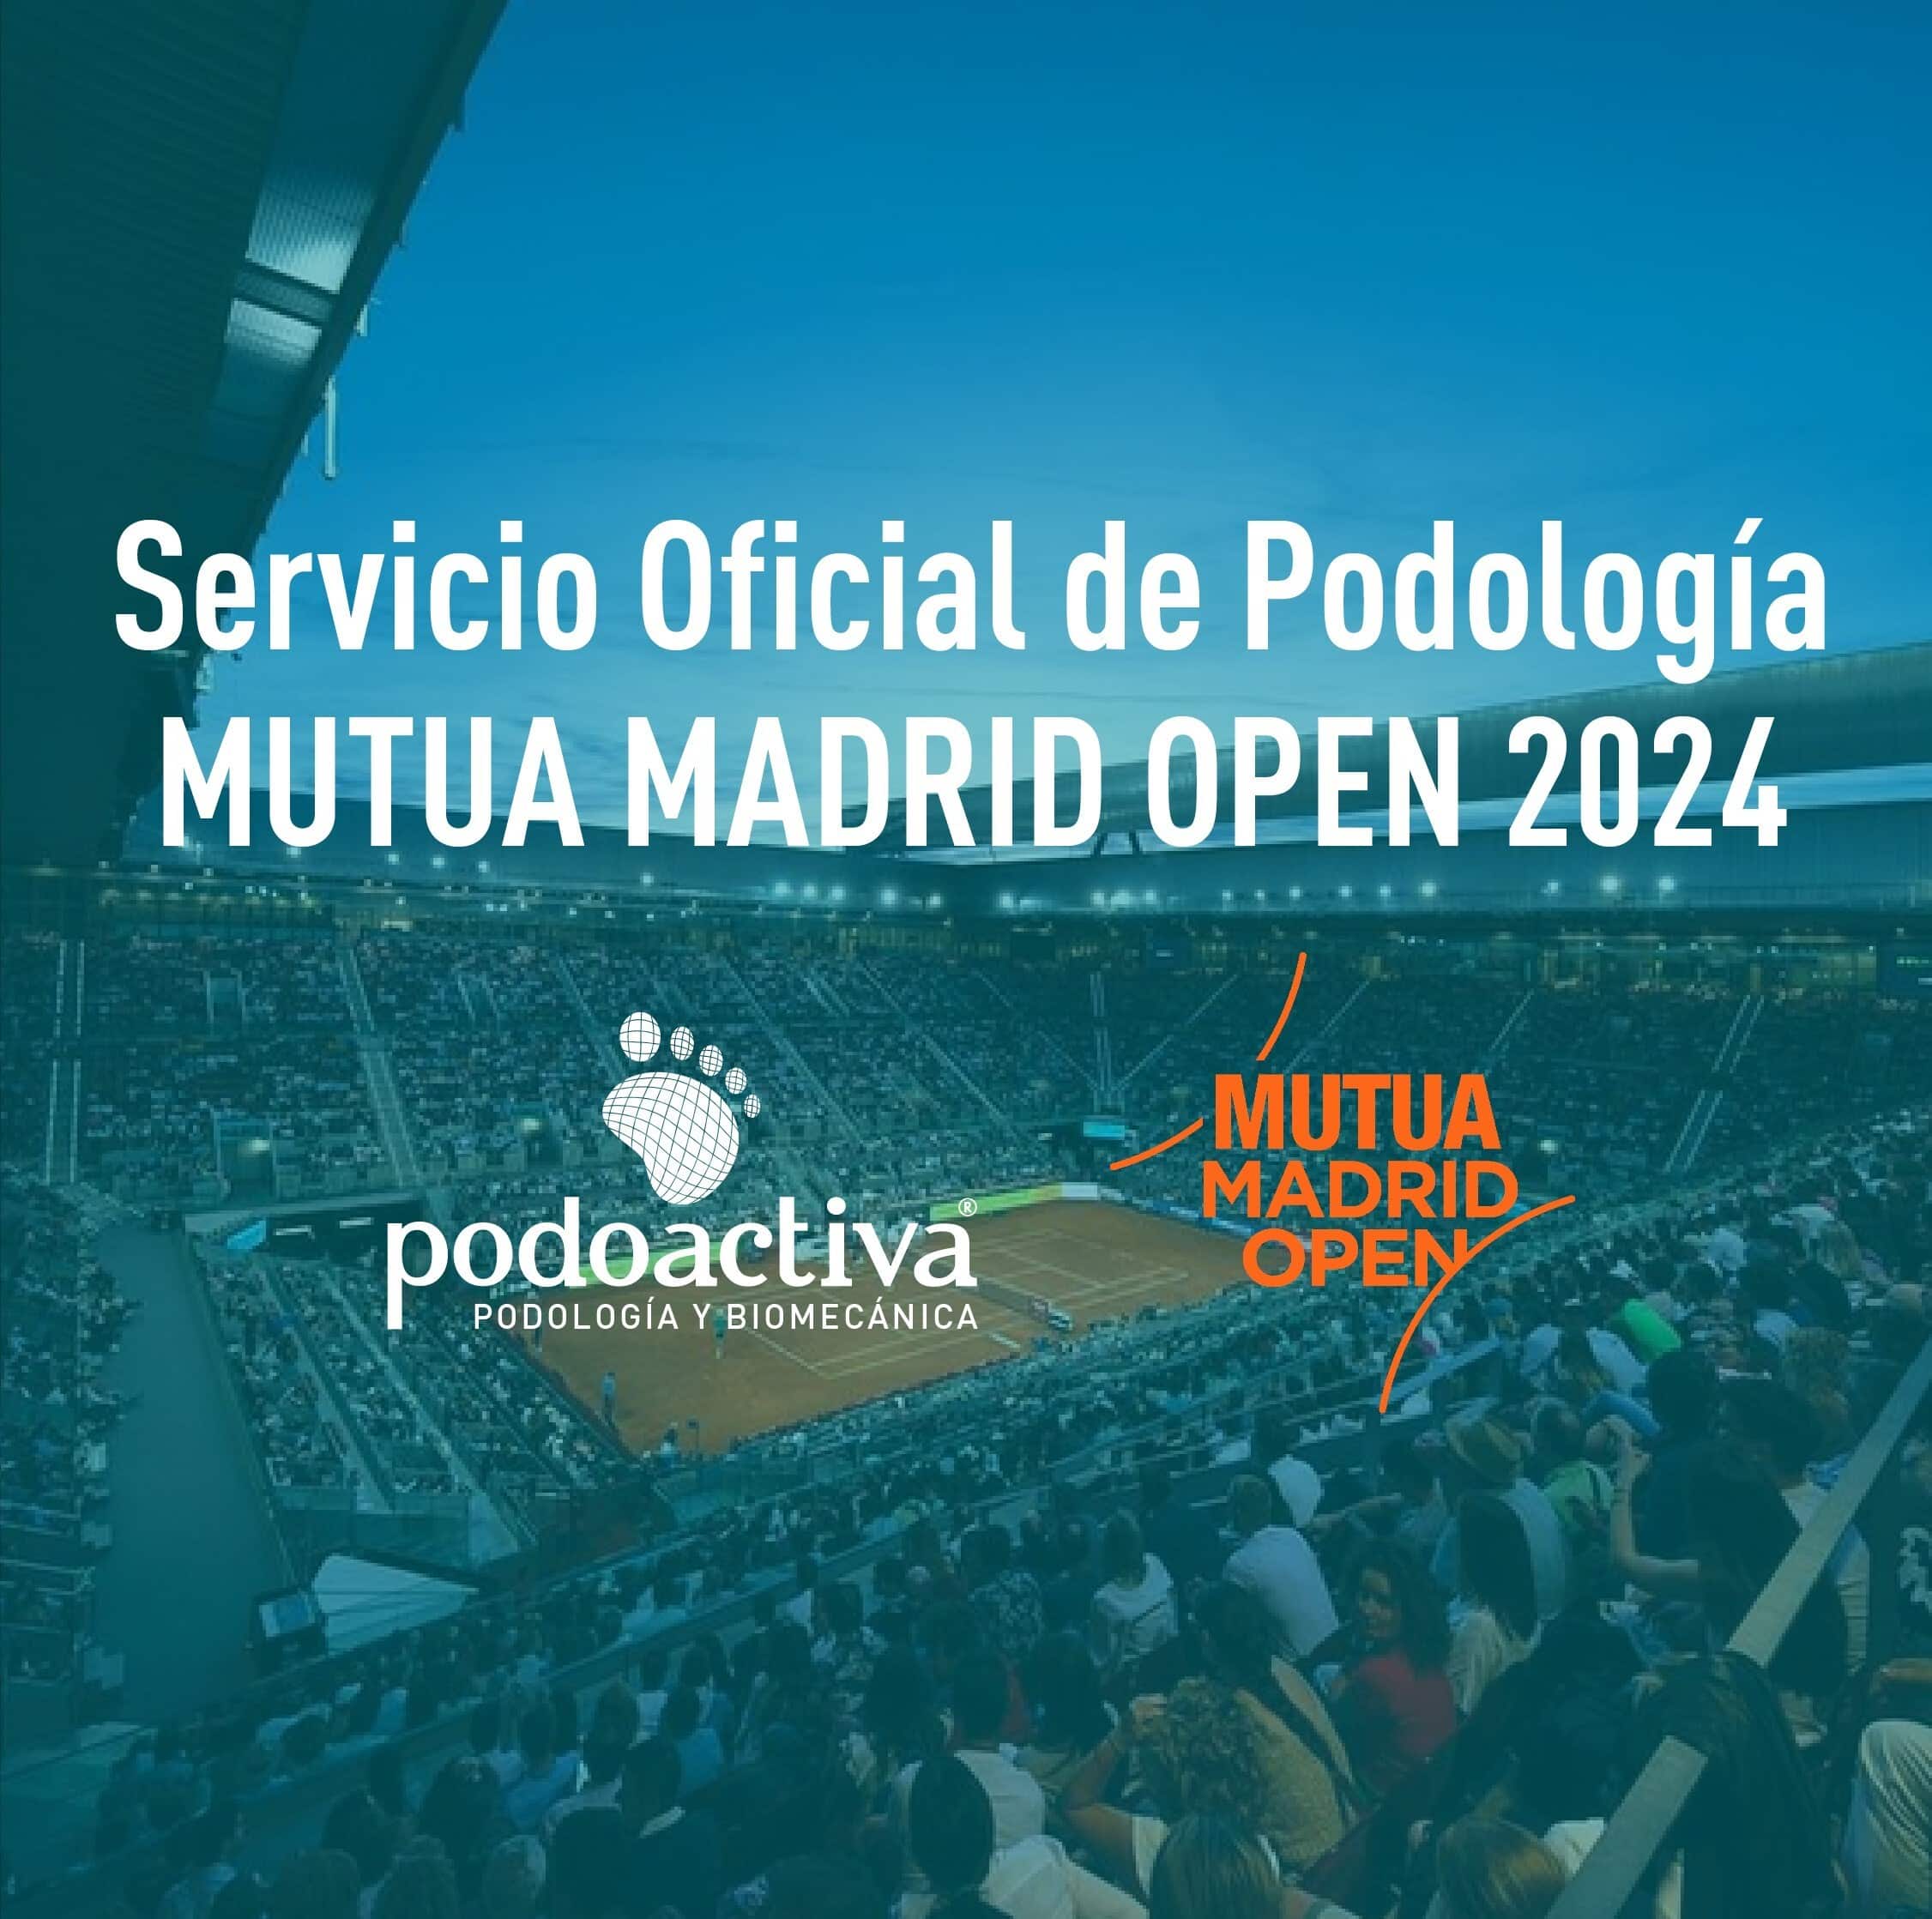 En este momento estás viendo PODOACTIVA, NUEVO SERVICIO OFICIAL DE PODOLOGÍA DEL MUTUA MADRID OPEN 2024